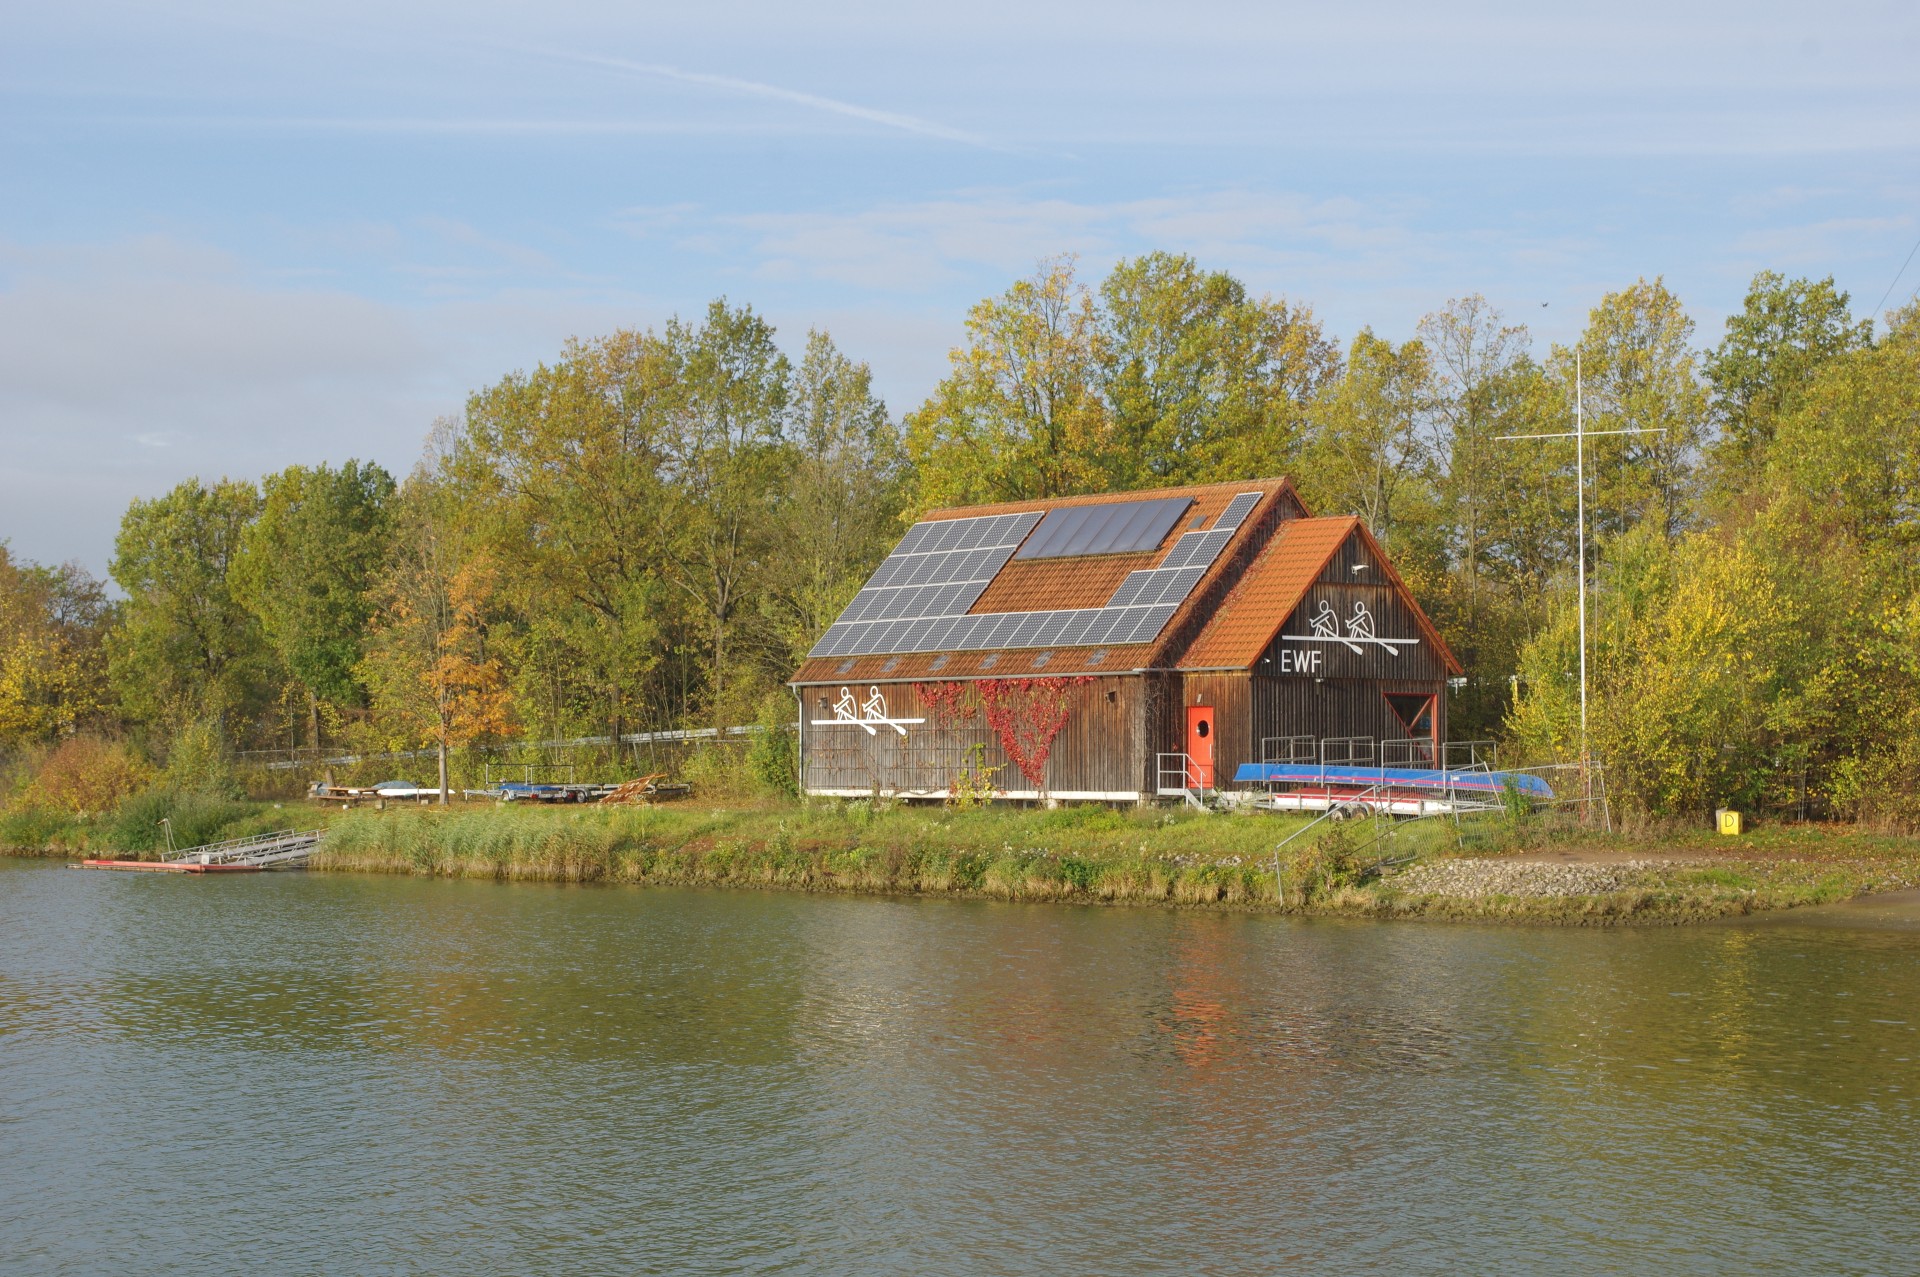 EWF-Bootshaus am Main-Donau-Kanal in Erlangen (Foto: Arne Borsum)